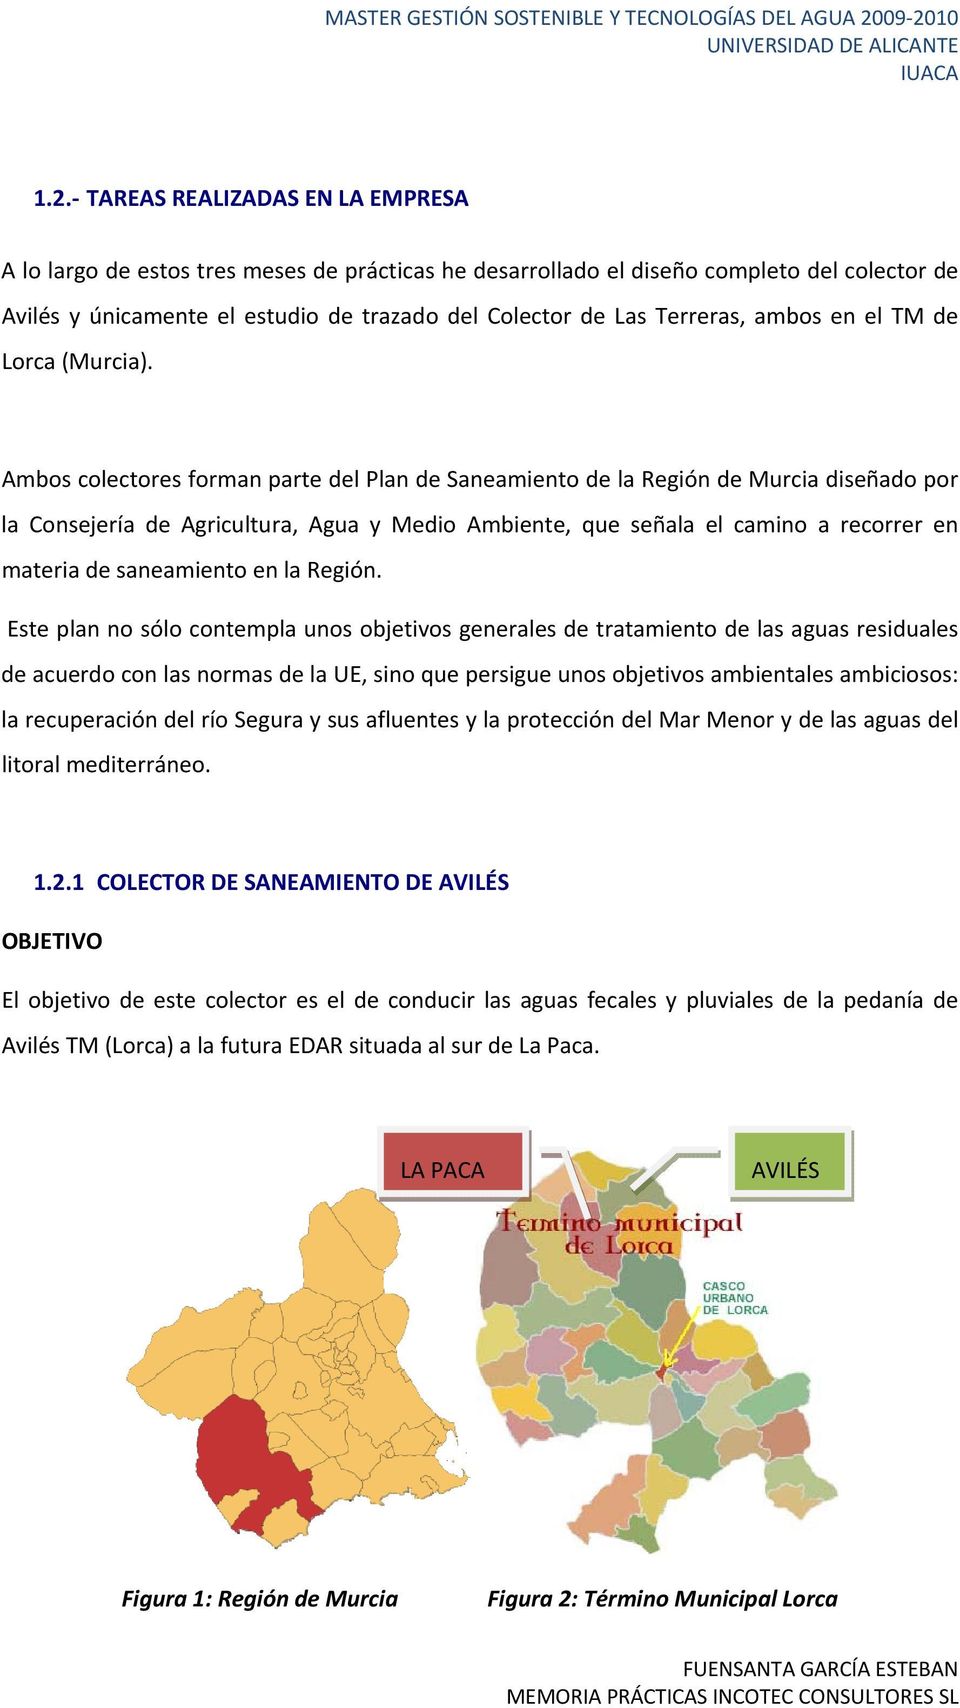 Ambos colectores forman parte del Plan de Saneamiento de la Región de Murcia diseñado por la Consejería de Agricultura, Agua y Medio Ambiente, que señala el camino a recorrer en materia de